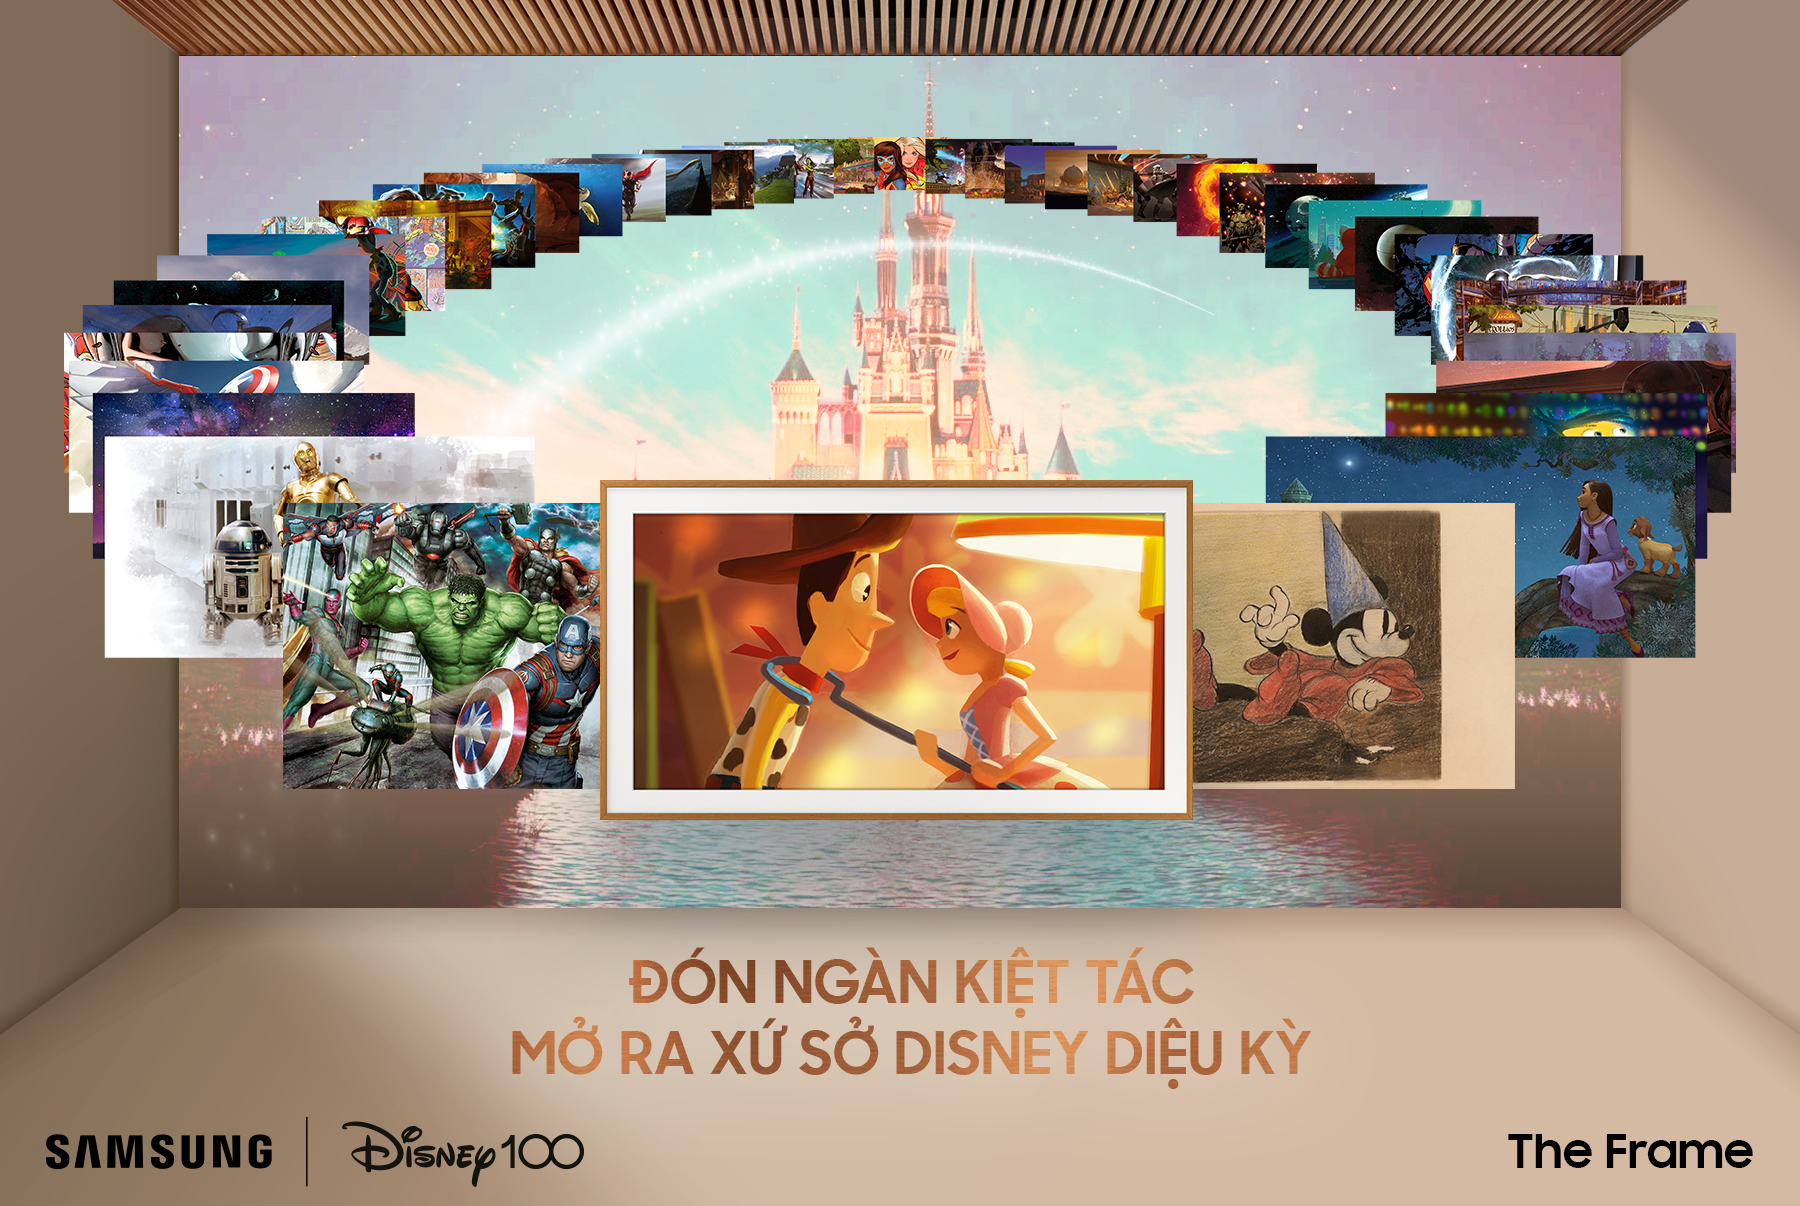 Samsung kỷ niệm 100 năm thành lập Disney với The Frame phiên bản đặc biệt tại Việt Nam